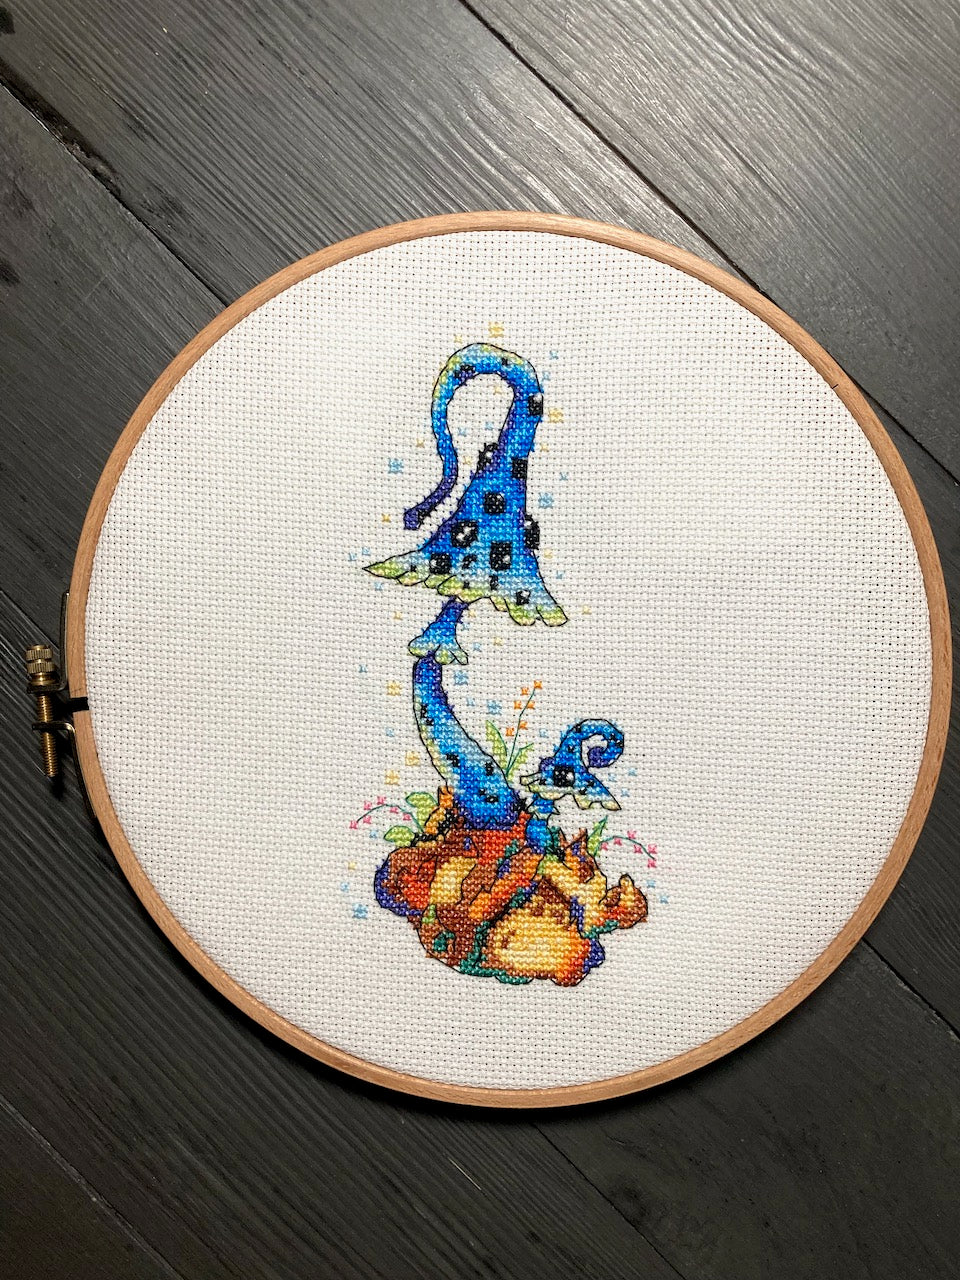 Magic Mushroom cross stitch pattern-5